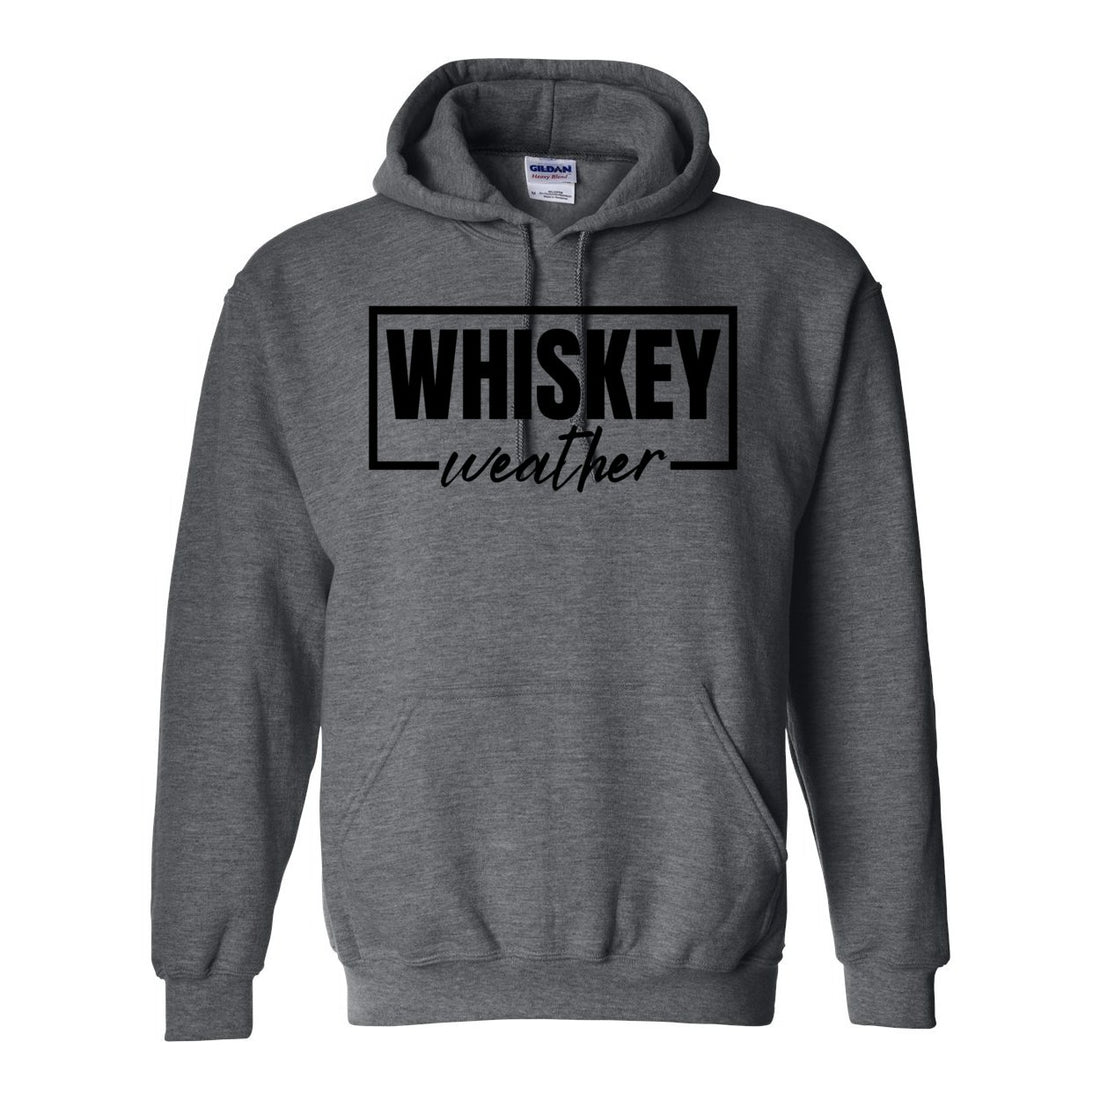 Whiskey Weather Hooded Sweatshirt - Sweaters/Hoodies - Positively Sassy - Whiskey Weather Hooded Sweatshirt